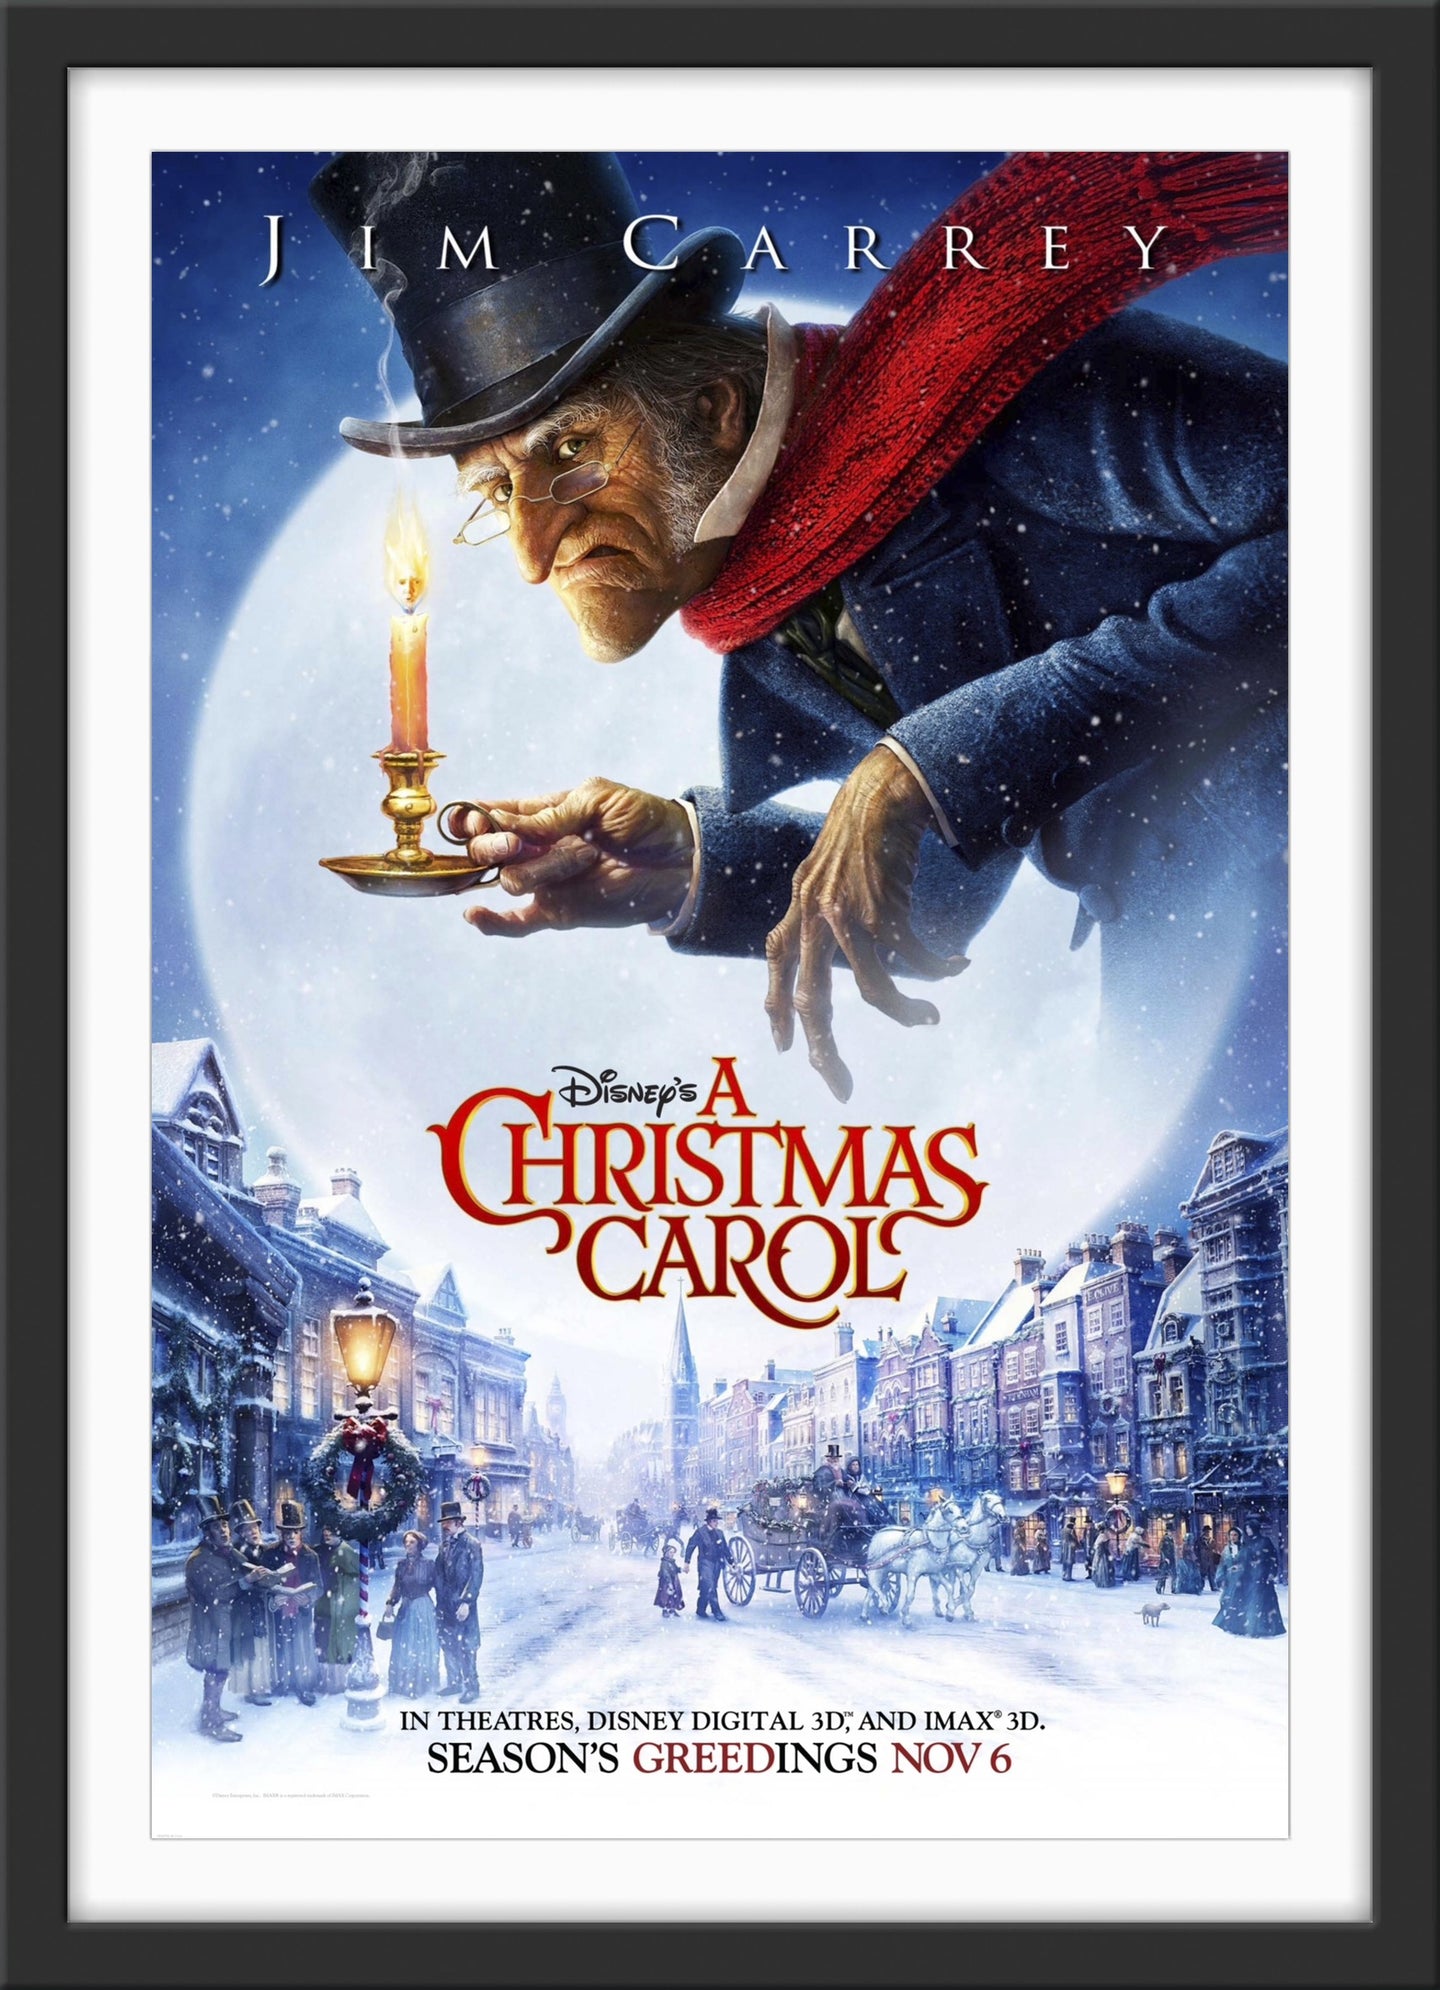 An original movie poster for the Jim Carrey movie A Christmas Carol - 2009